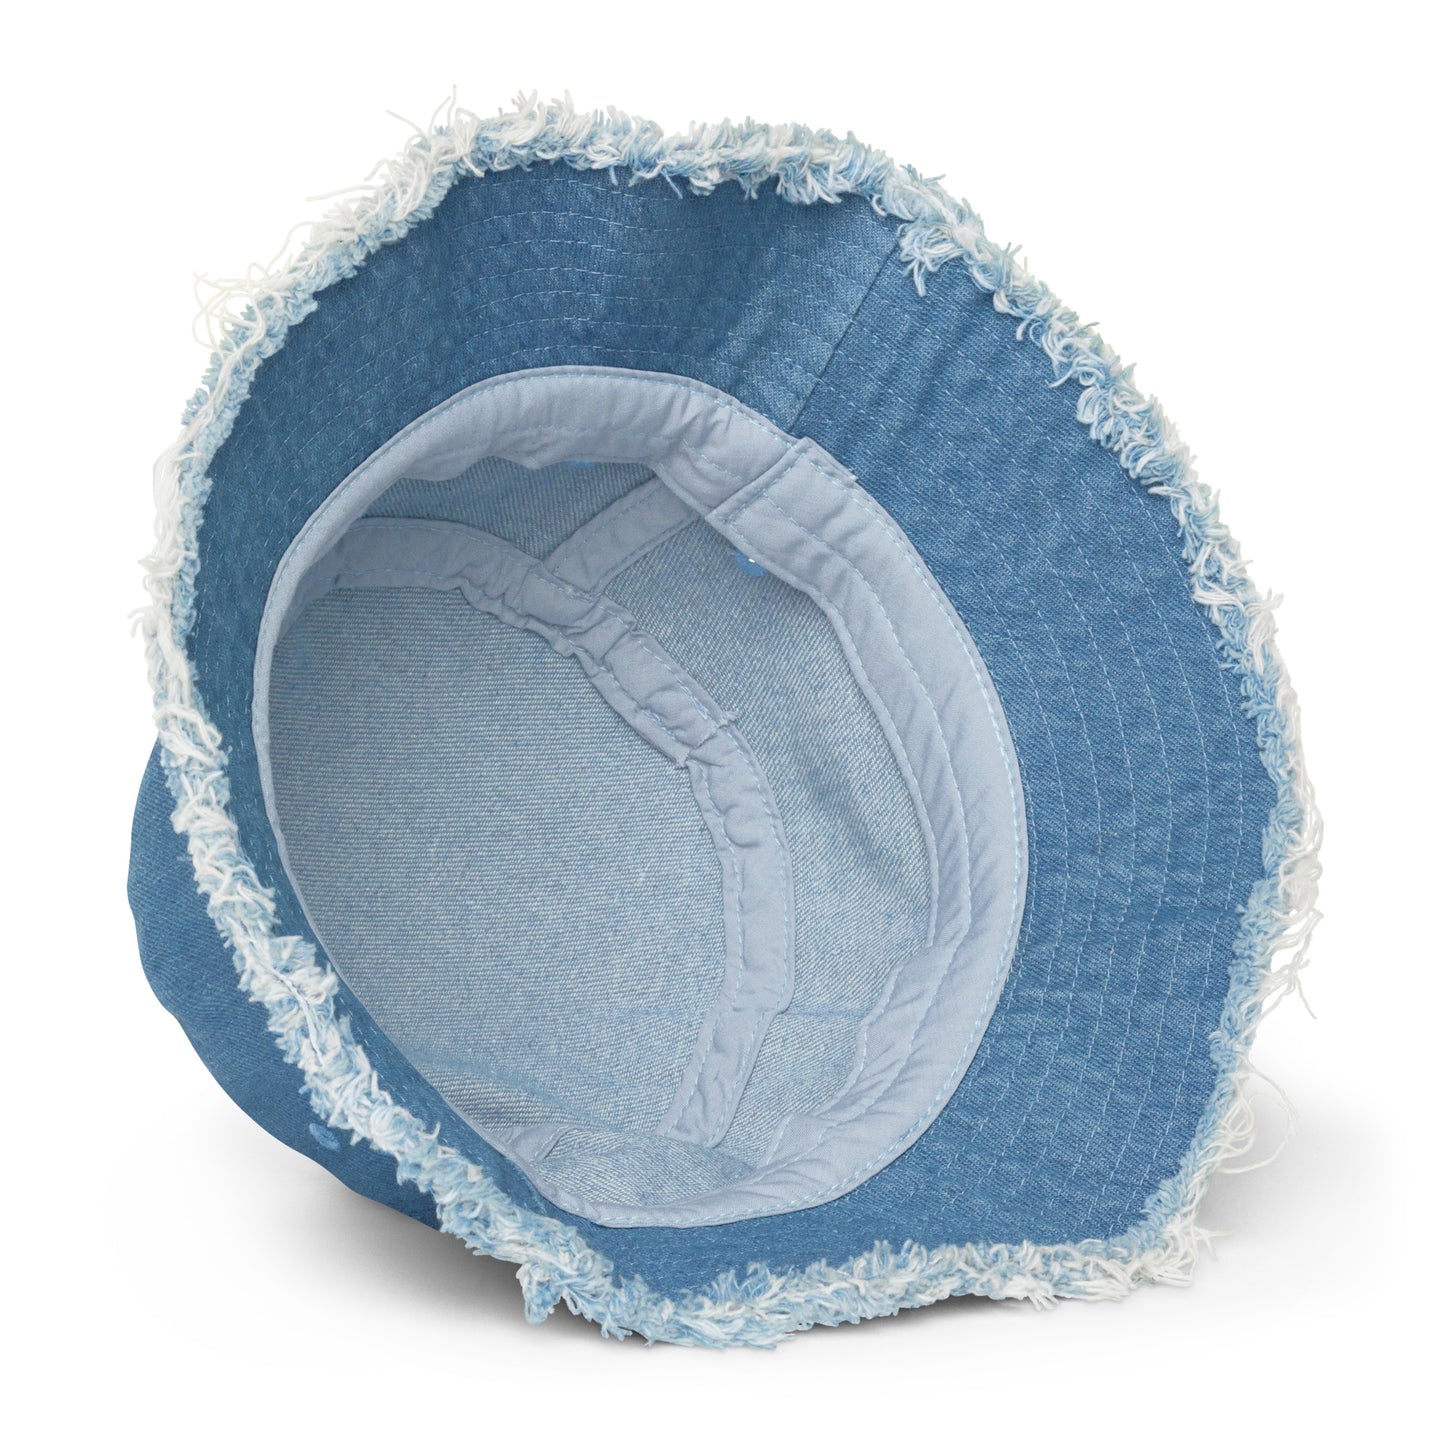 Y005 - Damaged denim bucket hat (Blue)